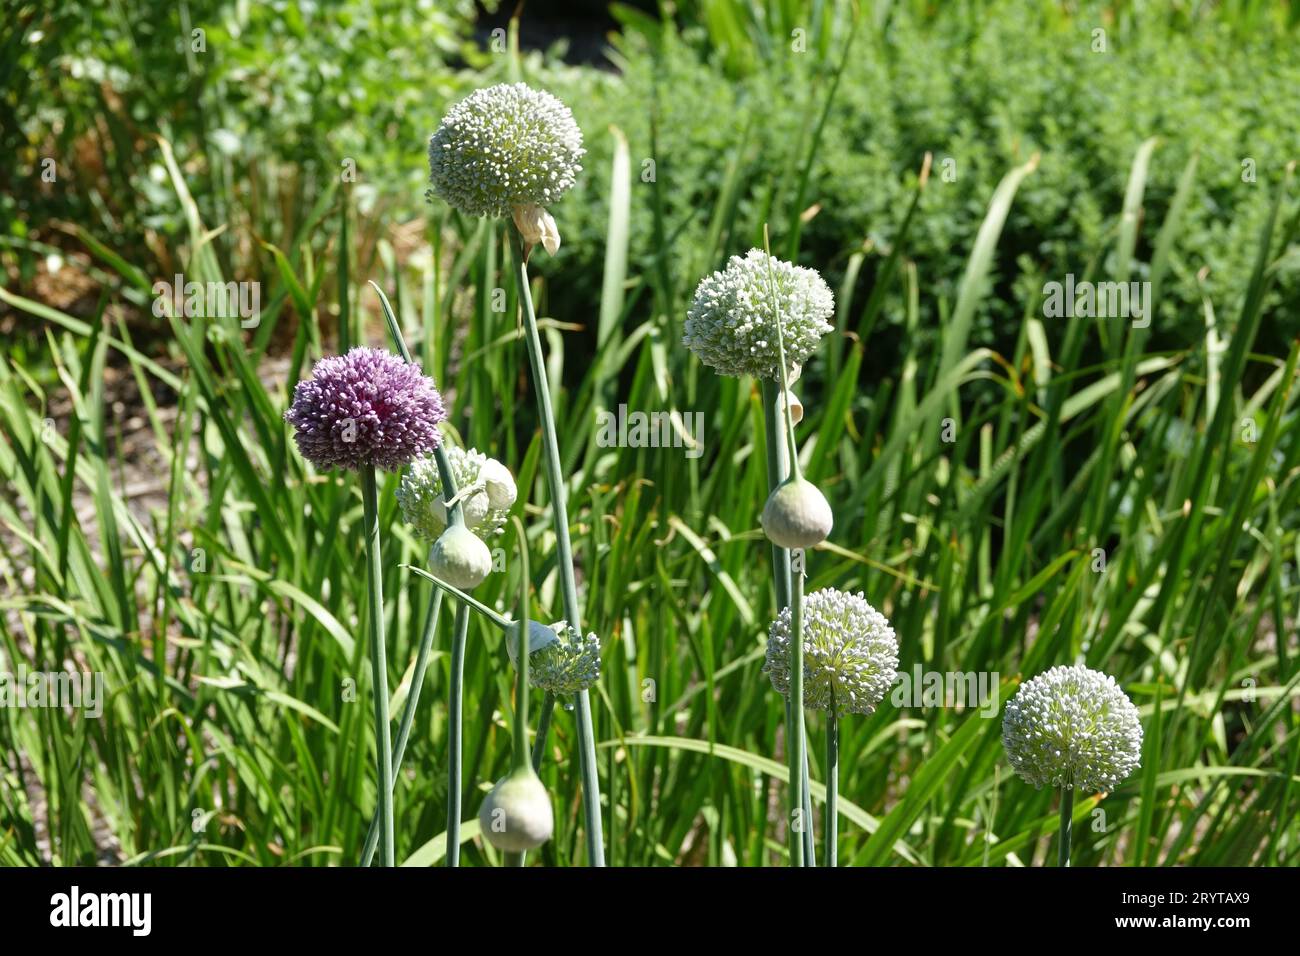 Allium porrum, leek Stock Photo